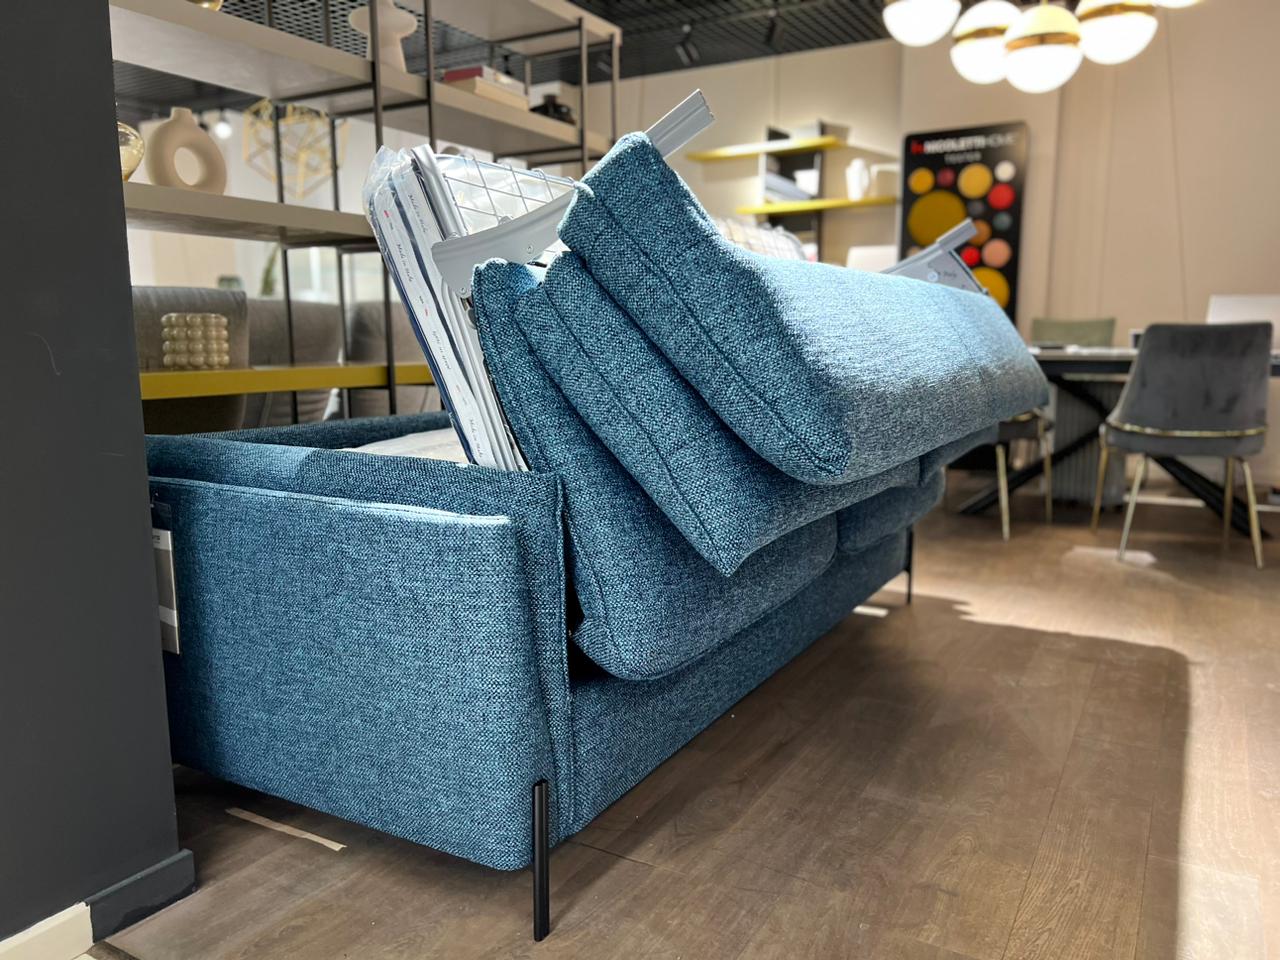 Итальянский диван INCANTO, модель со спальным местом FREE — ₽, купить у официального дилера Nicolettihome